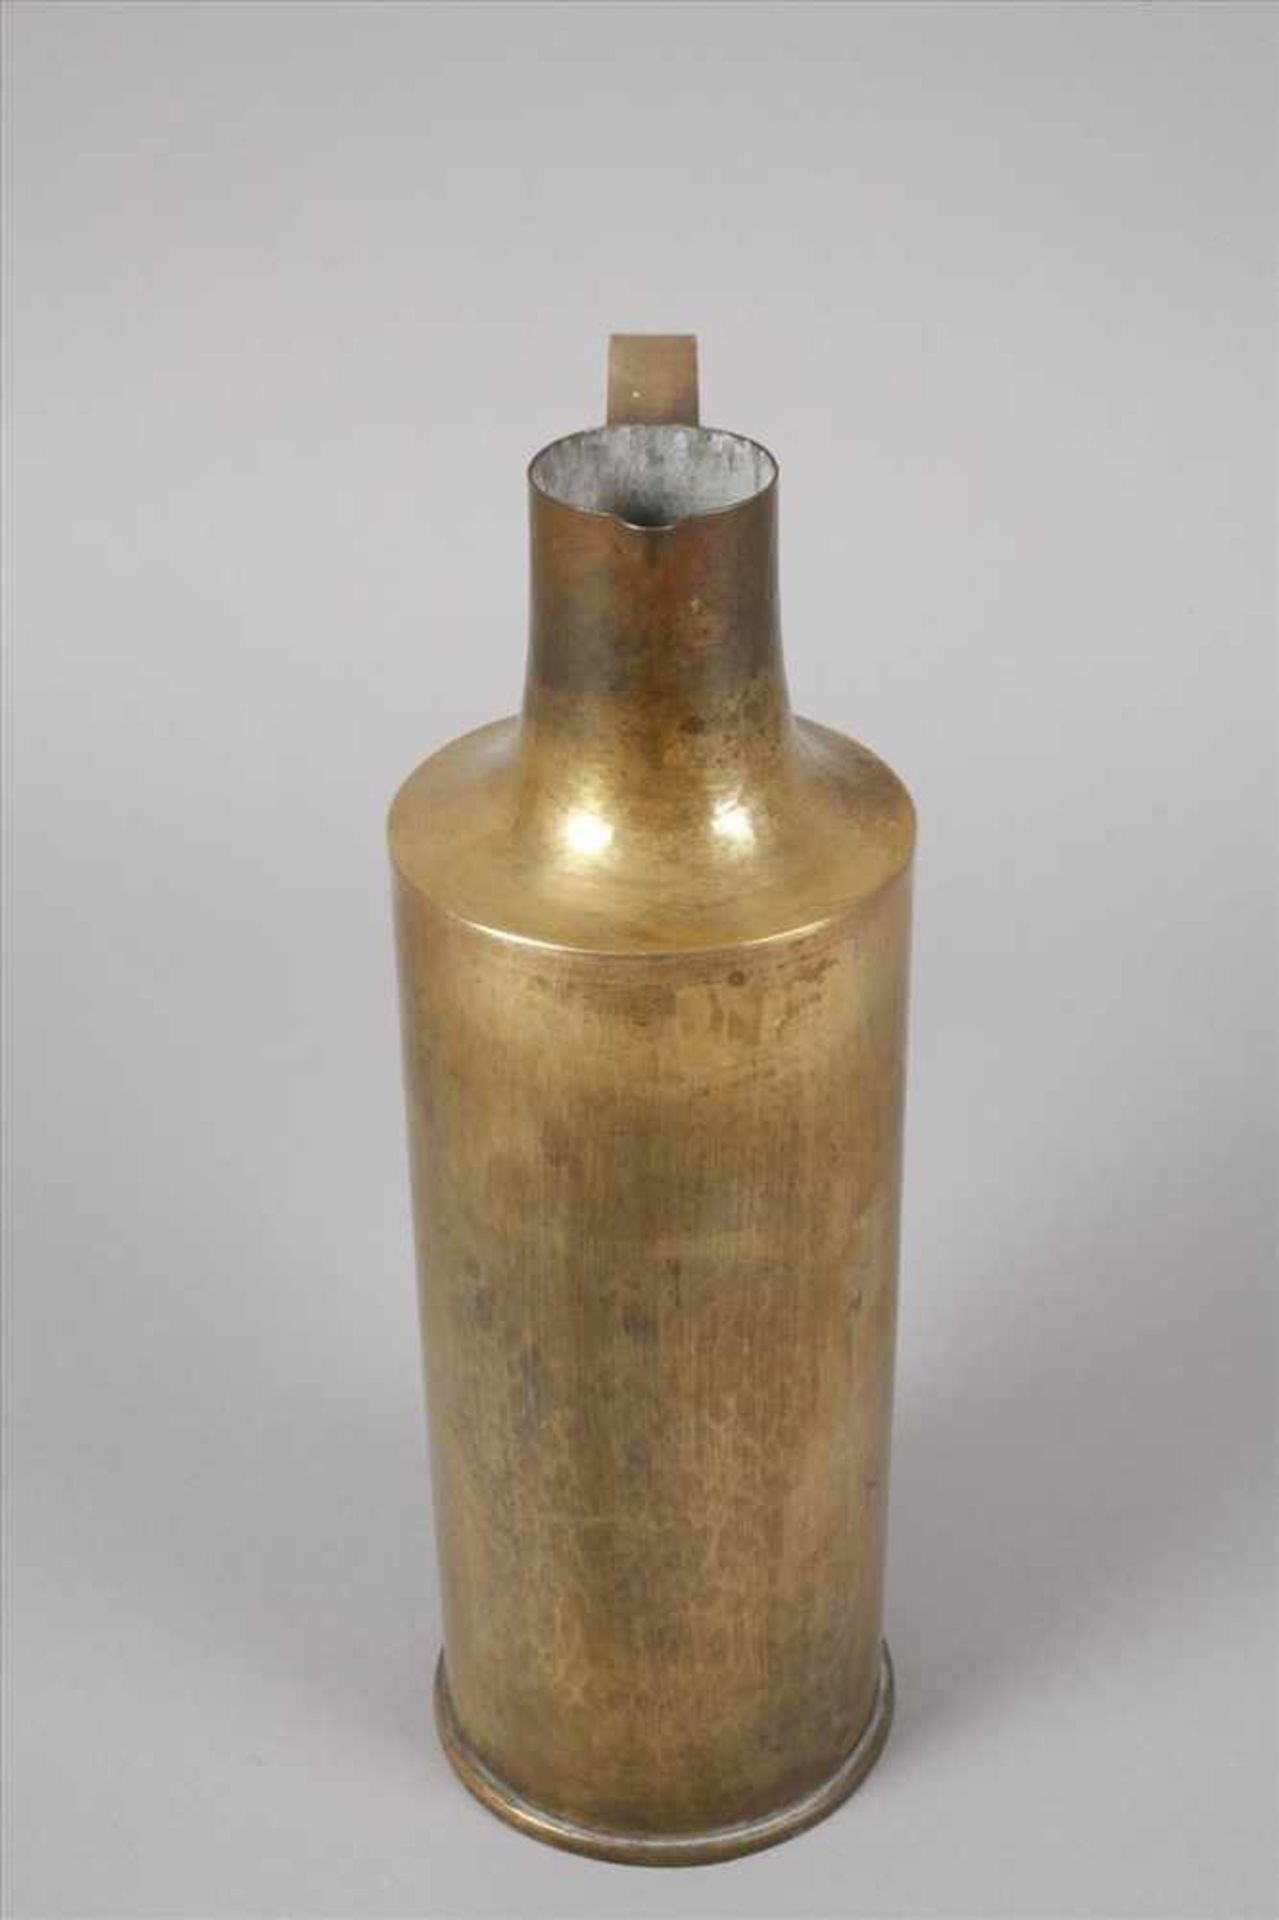 Messingkannewohl 1930er Jahre, ungemarkt, Messing handgetrieben, innen verzinnt, Zylinderform mit - Bild 2 aus 5